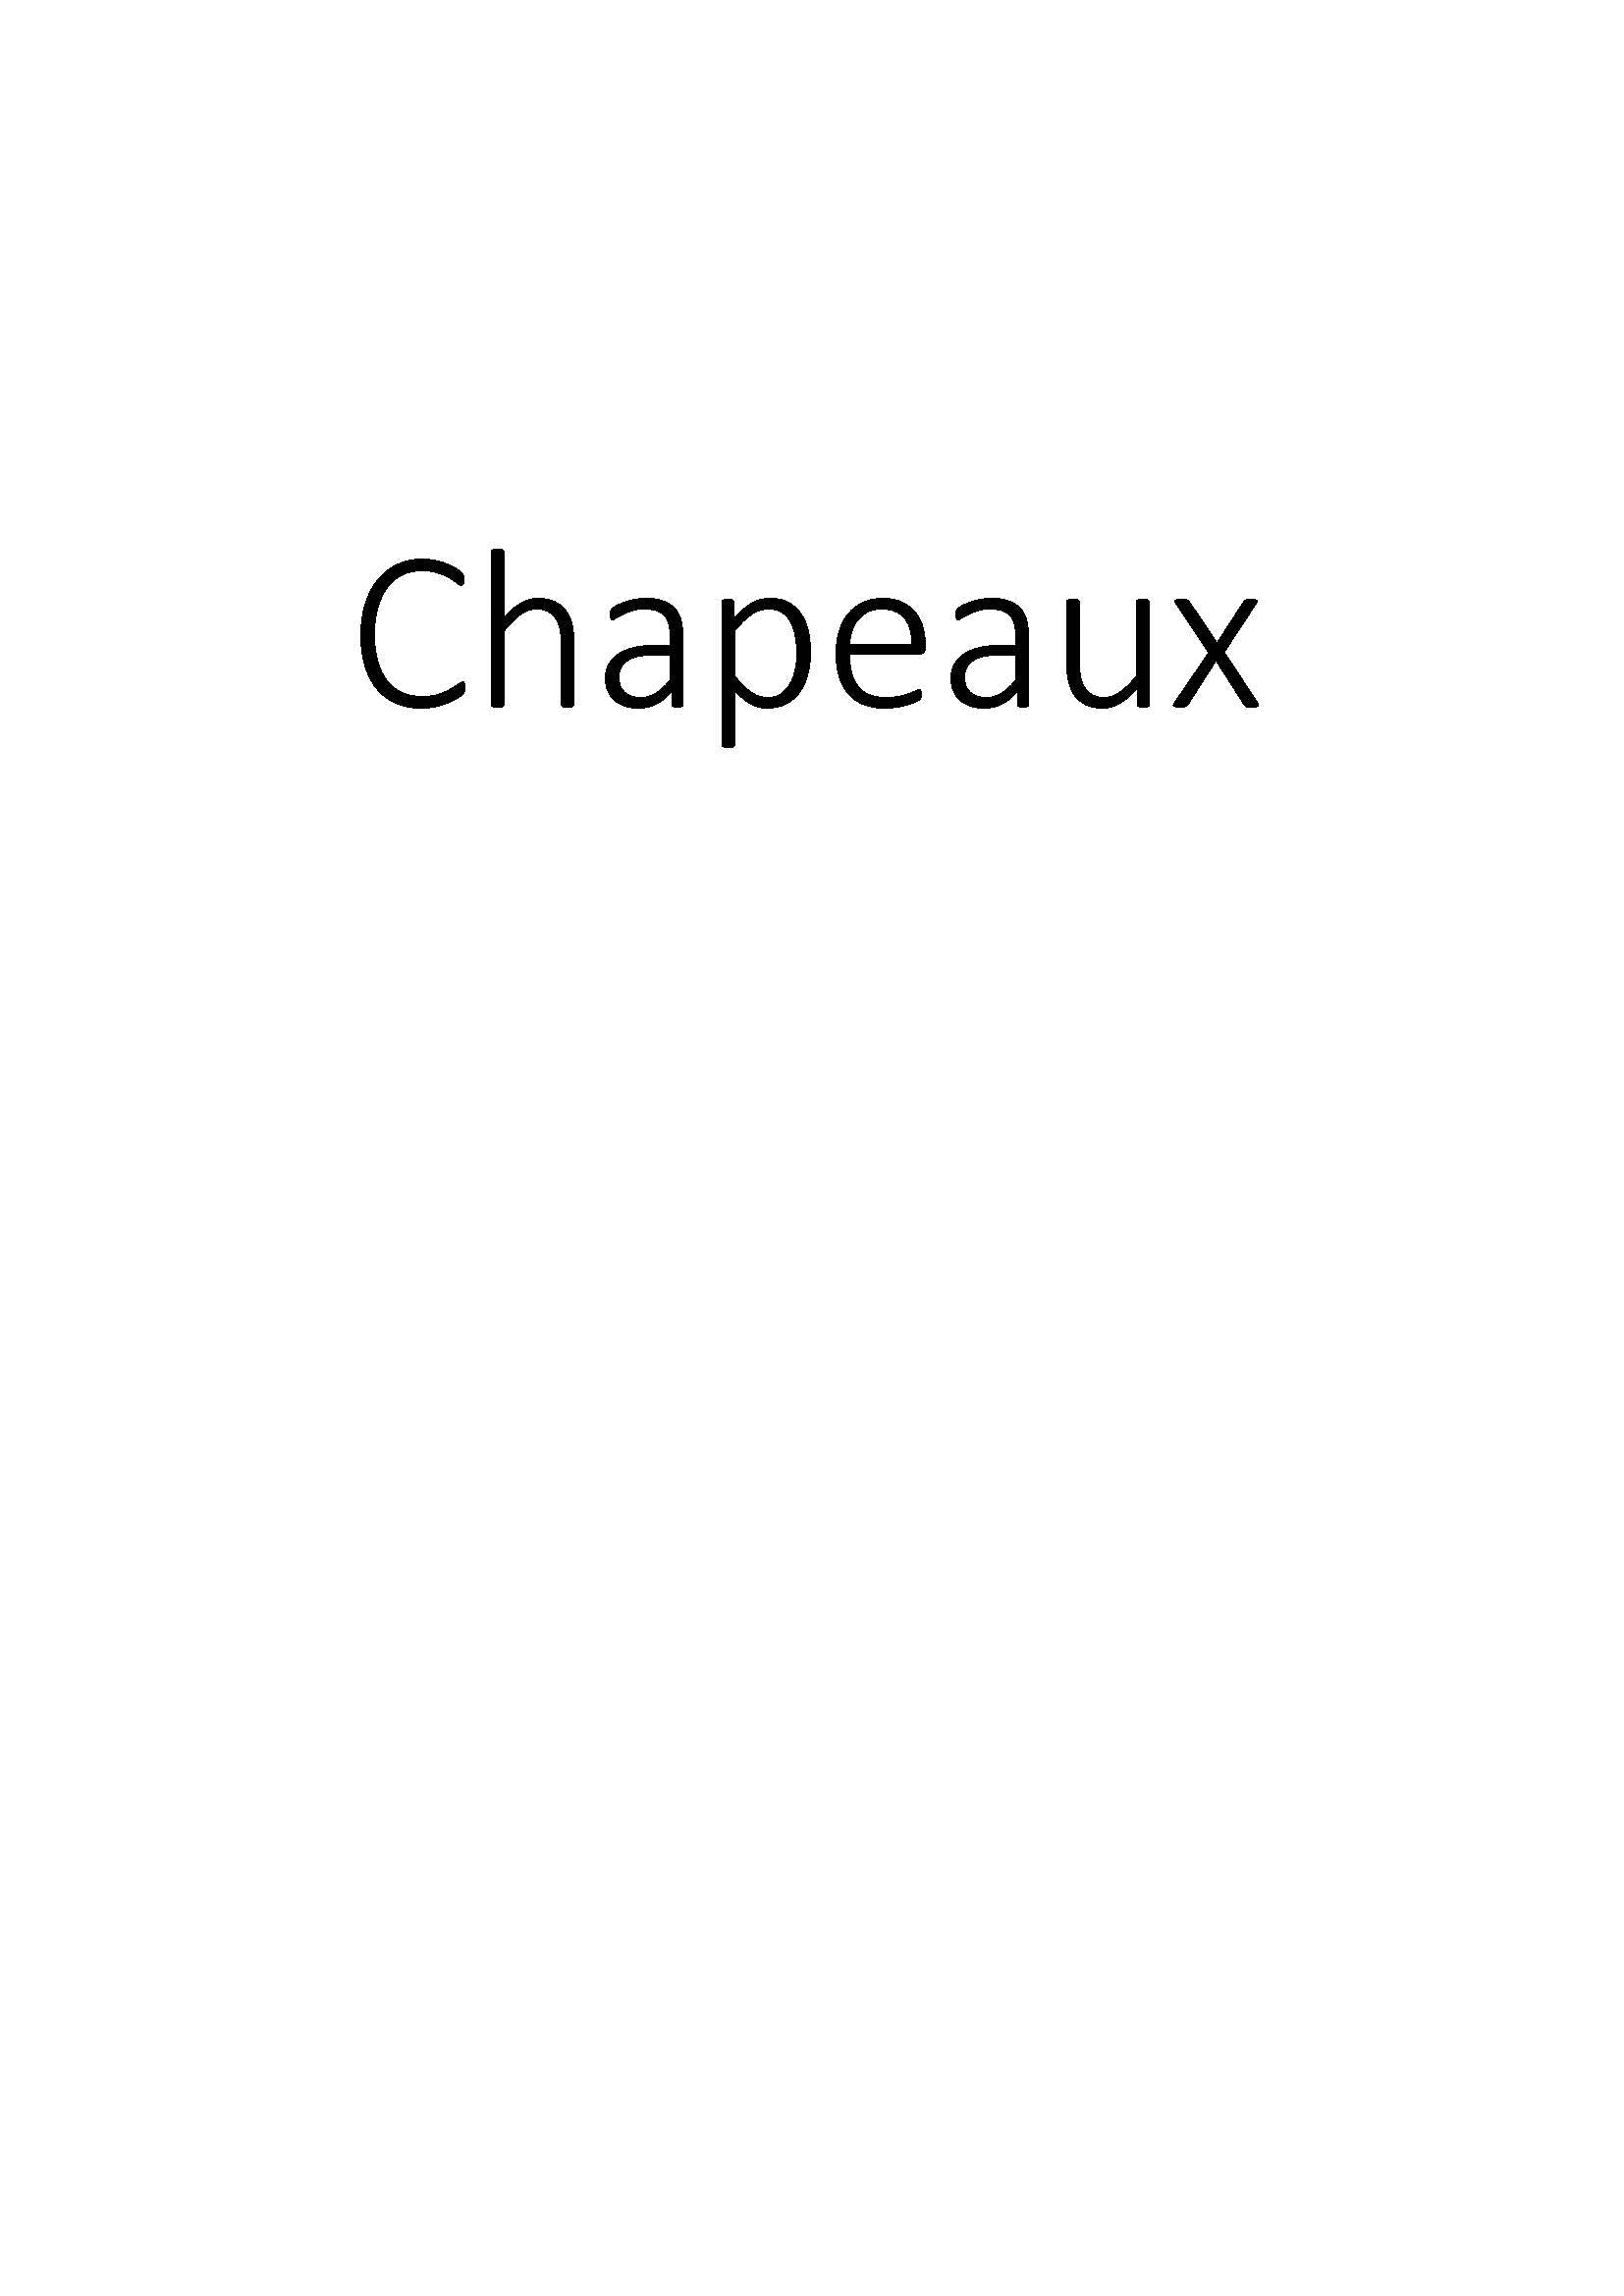 Chapeaux clicktofournisseur.com